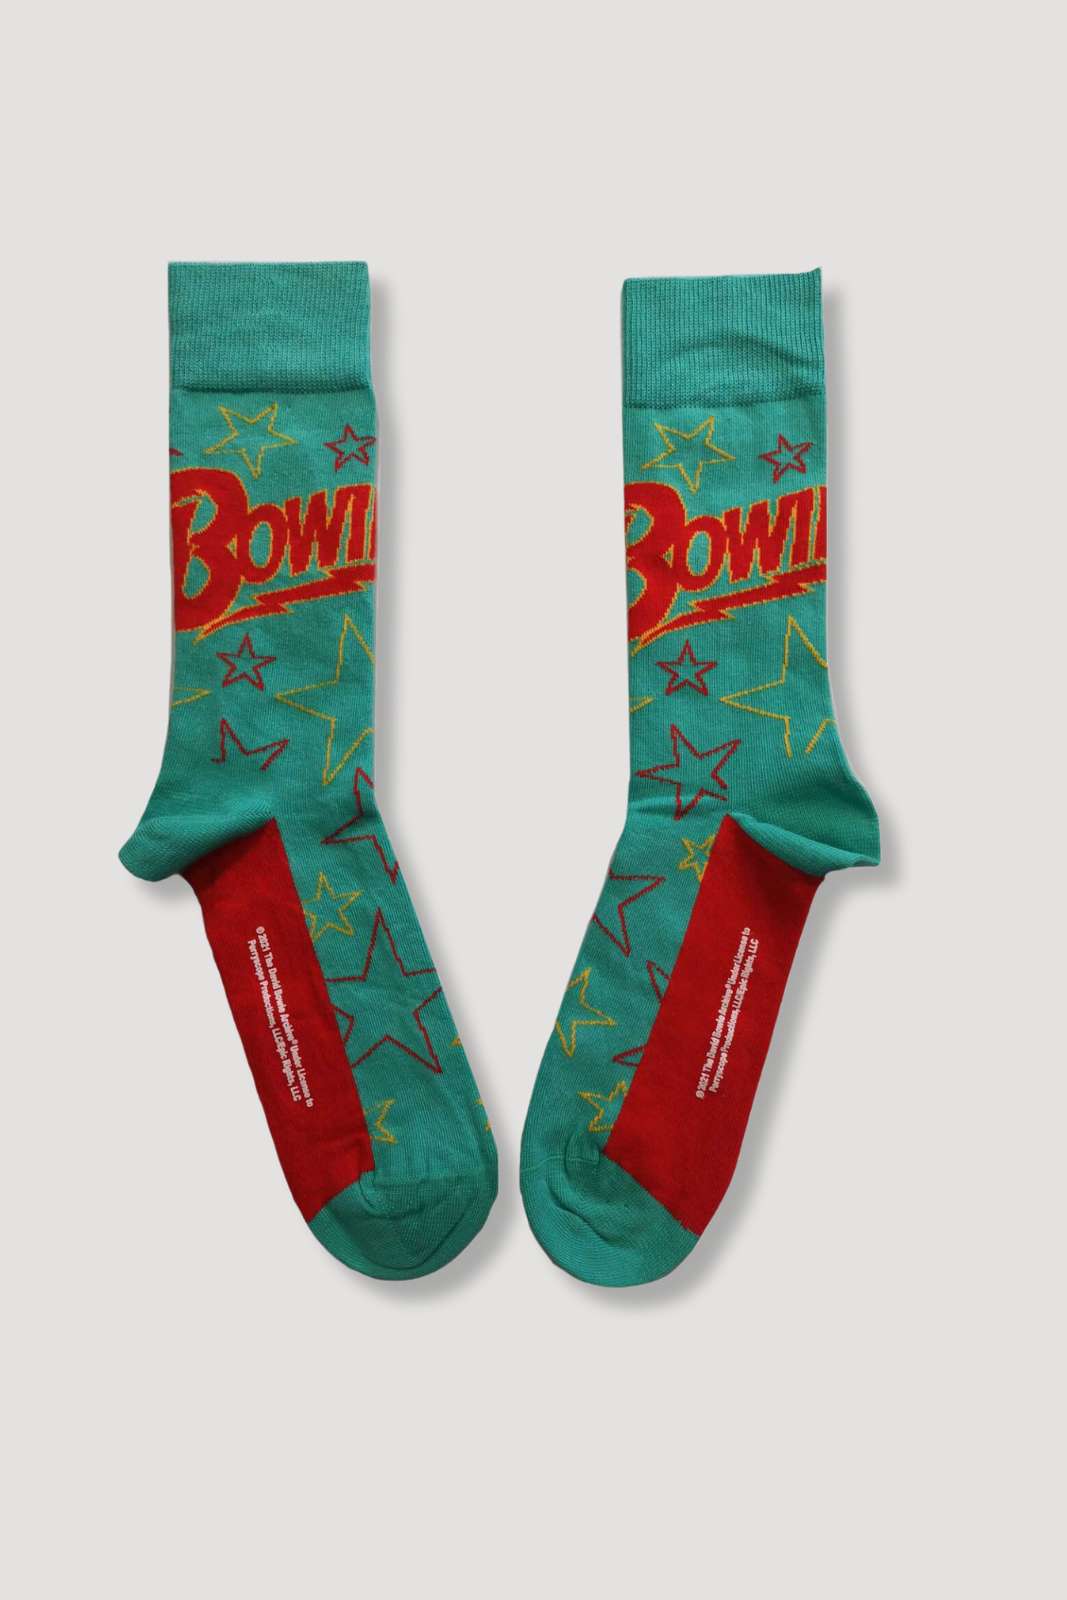 Bowie Socks Green Blue